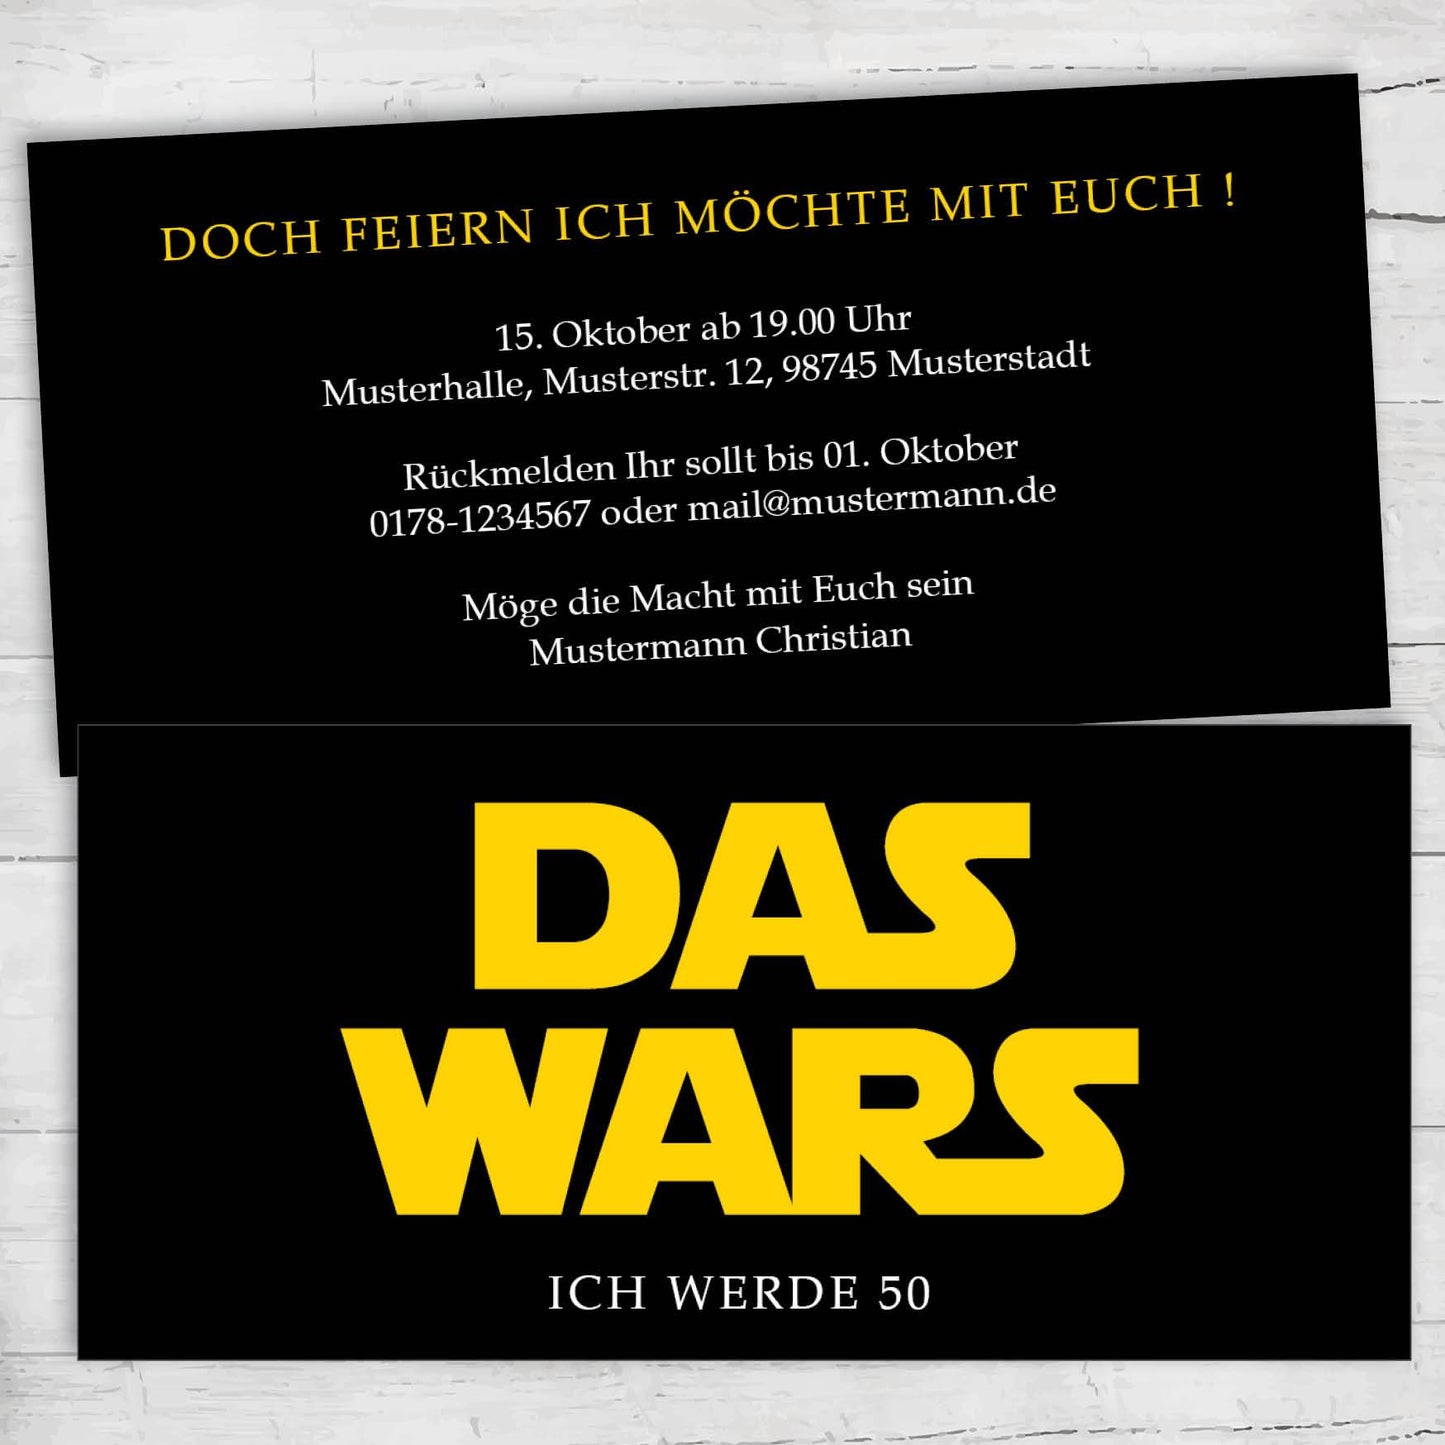 Einladung Zum 50. Geburtstag, Star Wars Logo: Das Wars